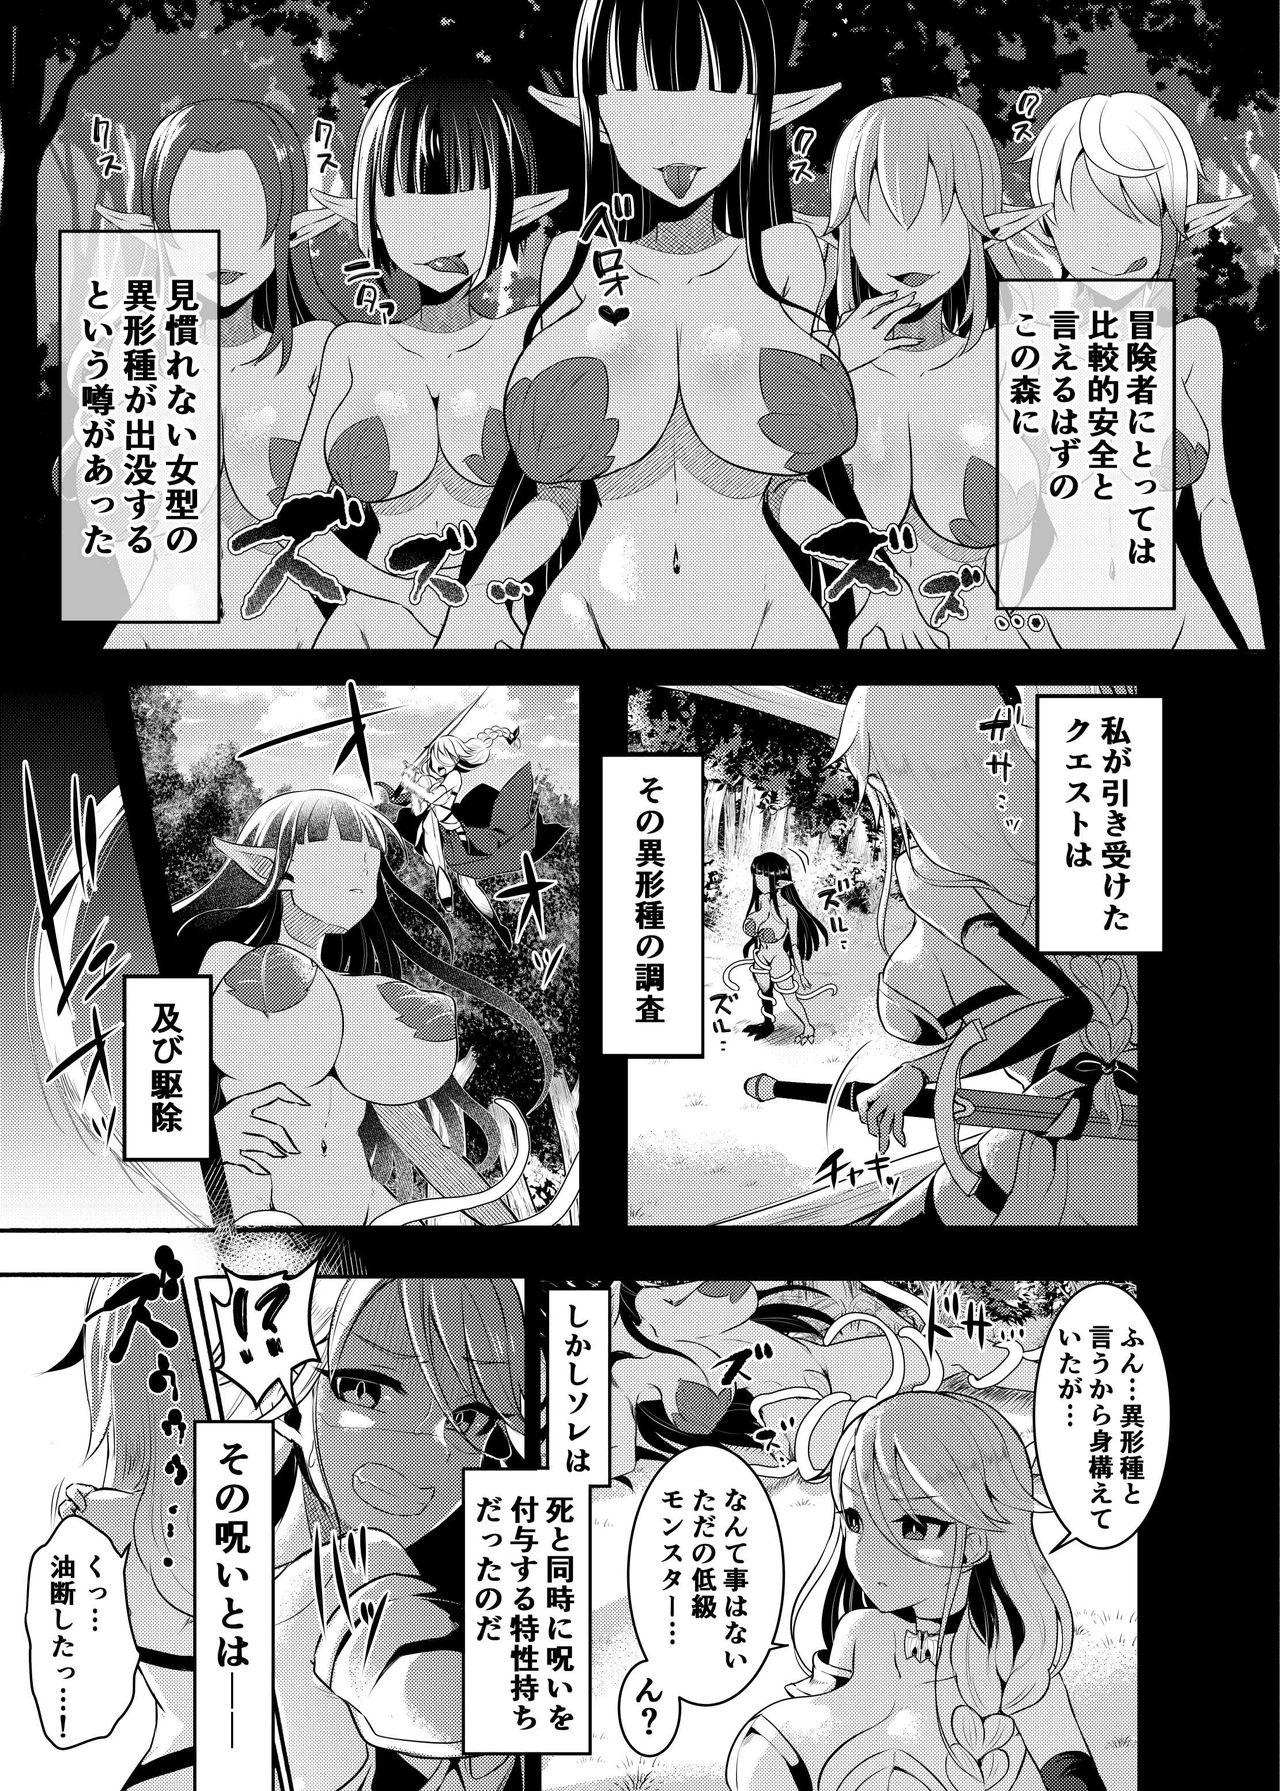 Swordfighter futanari continuous ejaculation 3